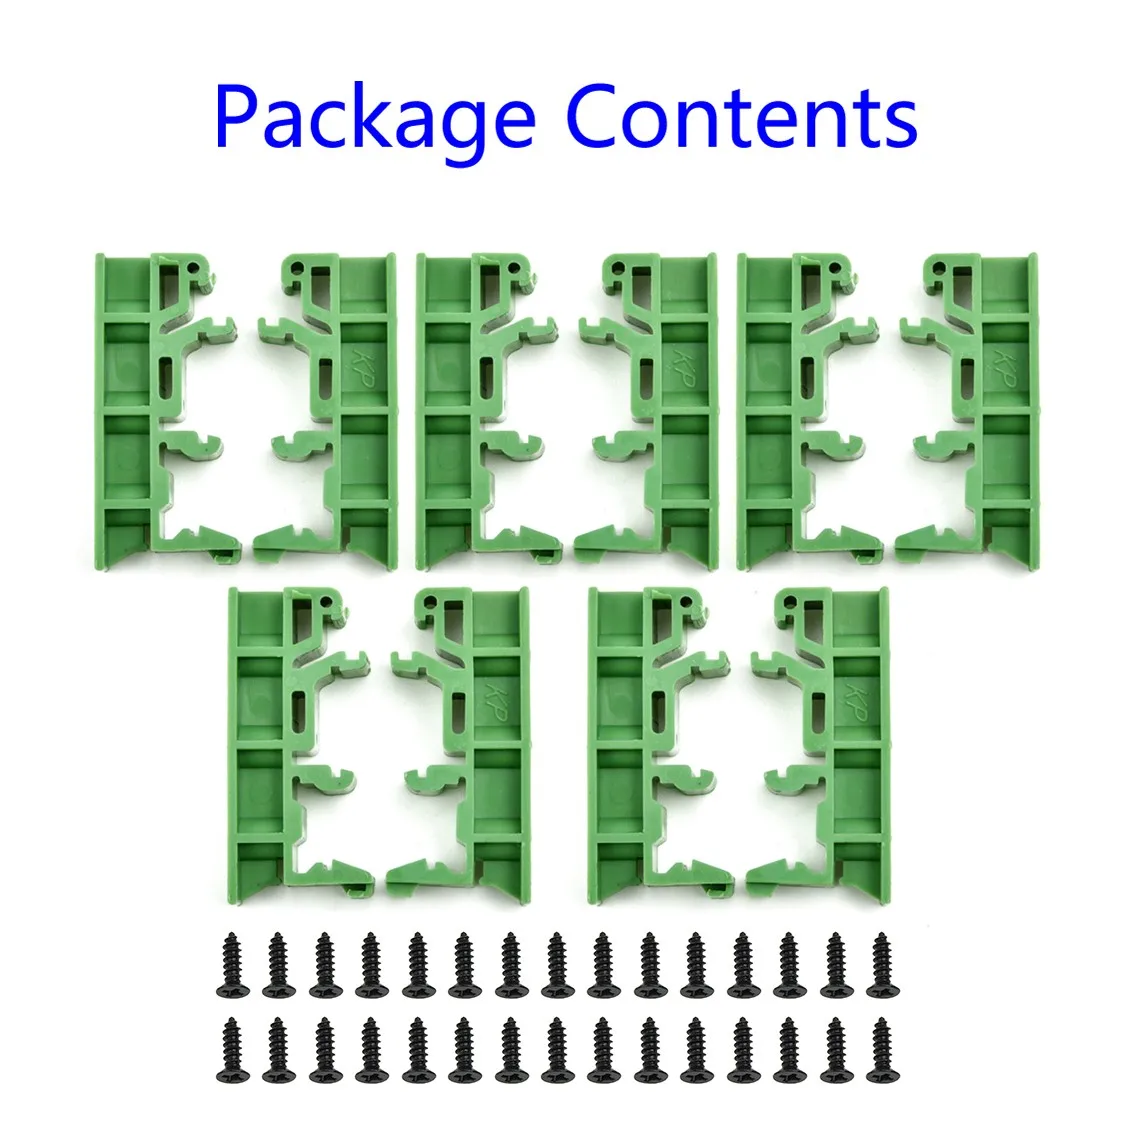 Juego de soportes de montaje PCB 2019 Hot, con 20 tornillos, DRG-01 plástico verde, 4,2x1x1,8 cm, apto para rieles de montaje DIN 35, 5 unidades